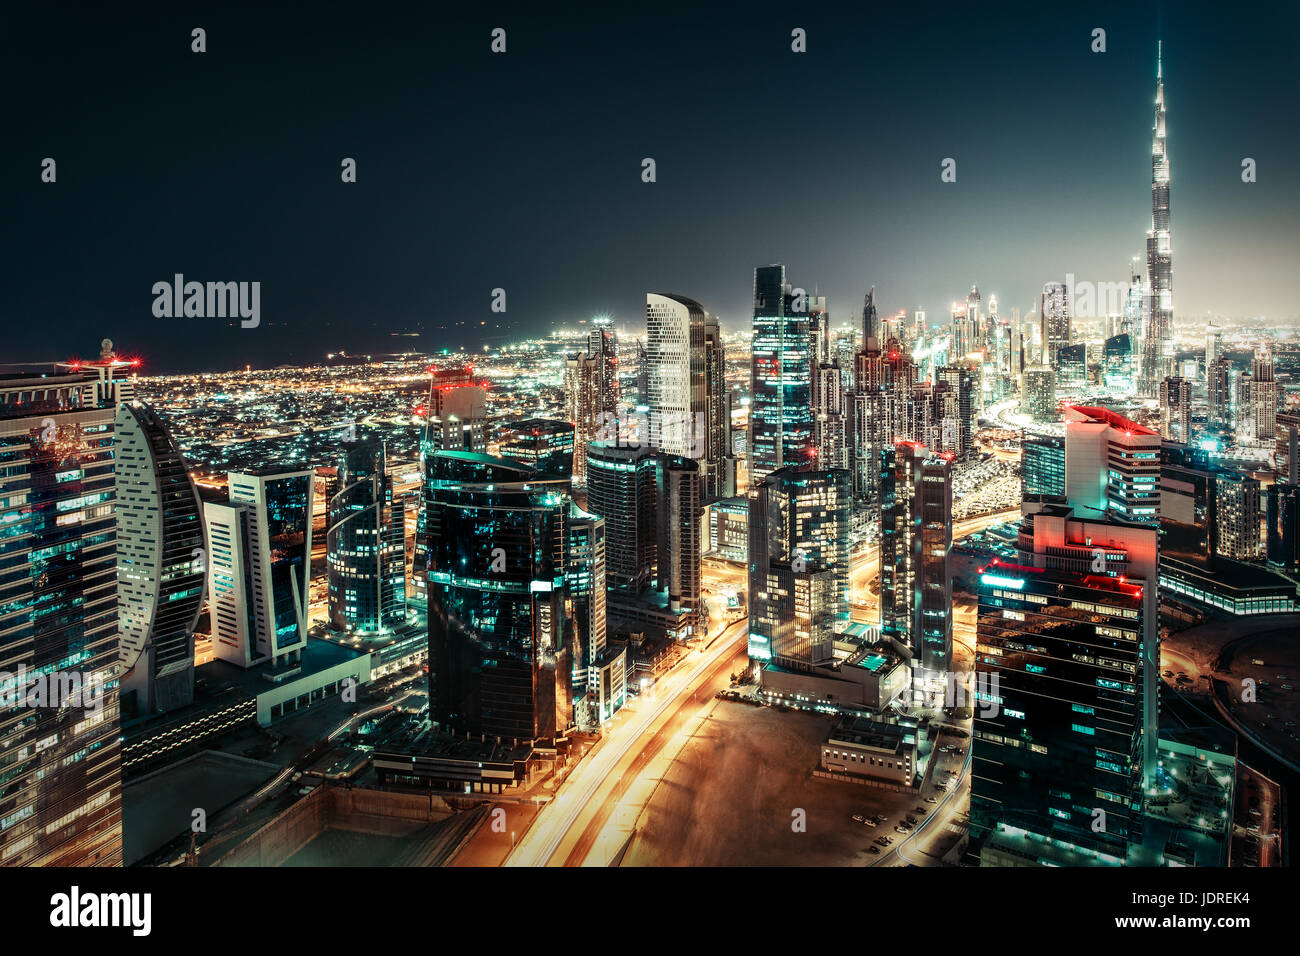 Fantástico horizonte nocturno: gran ciudad futurista con rascacielos iluminados. El centro de Dubai, en los Emiratos Árabes Unidos. Viajes de gran colorido telón de fondo. Foto de stock